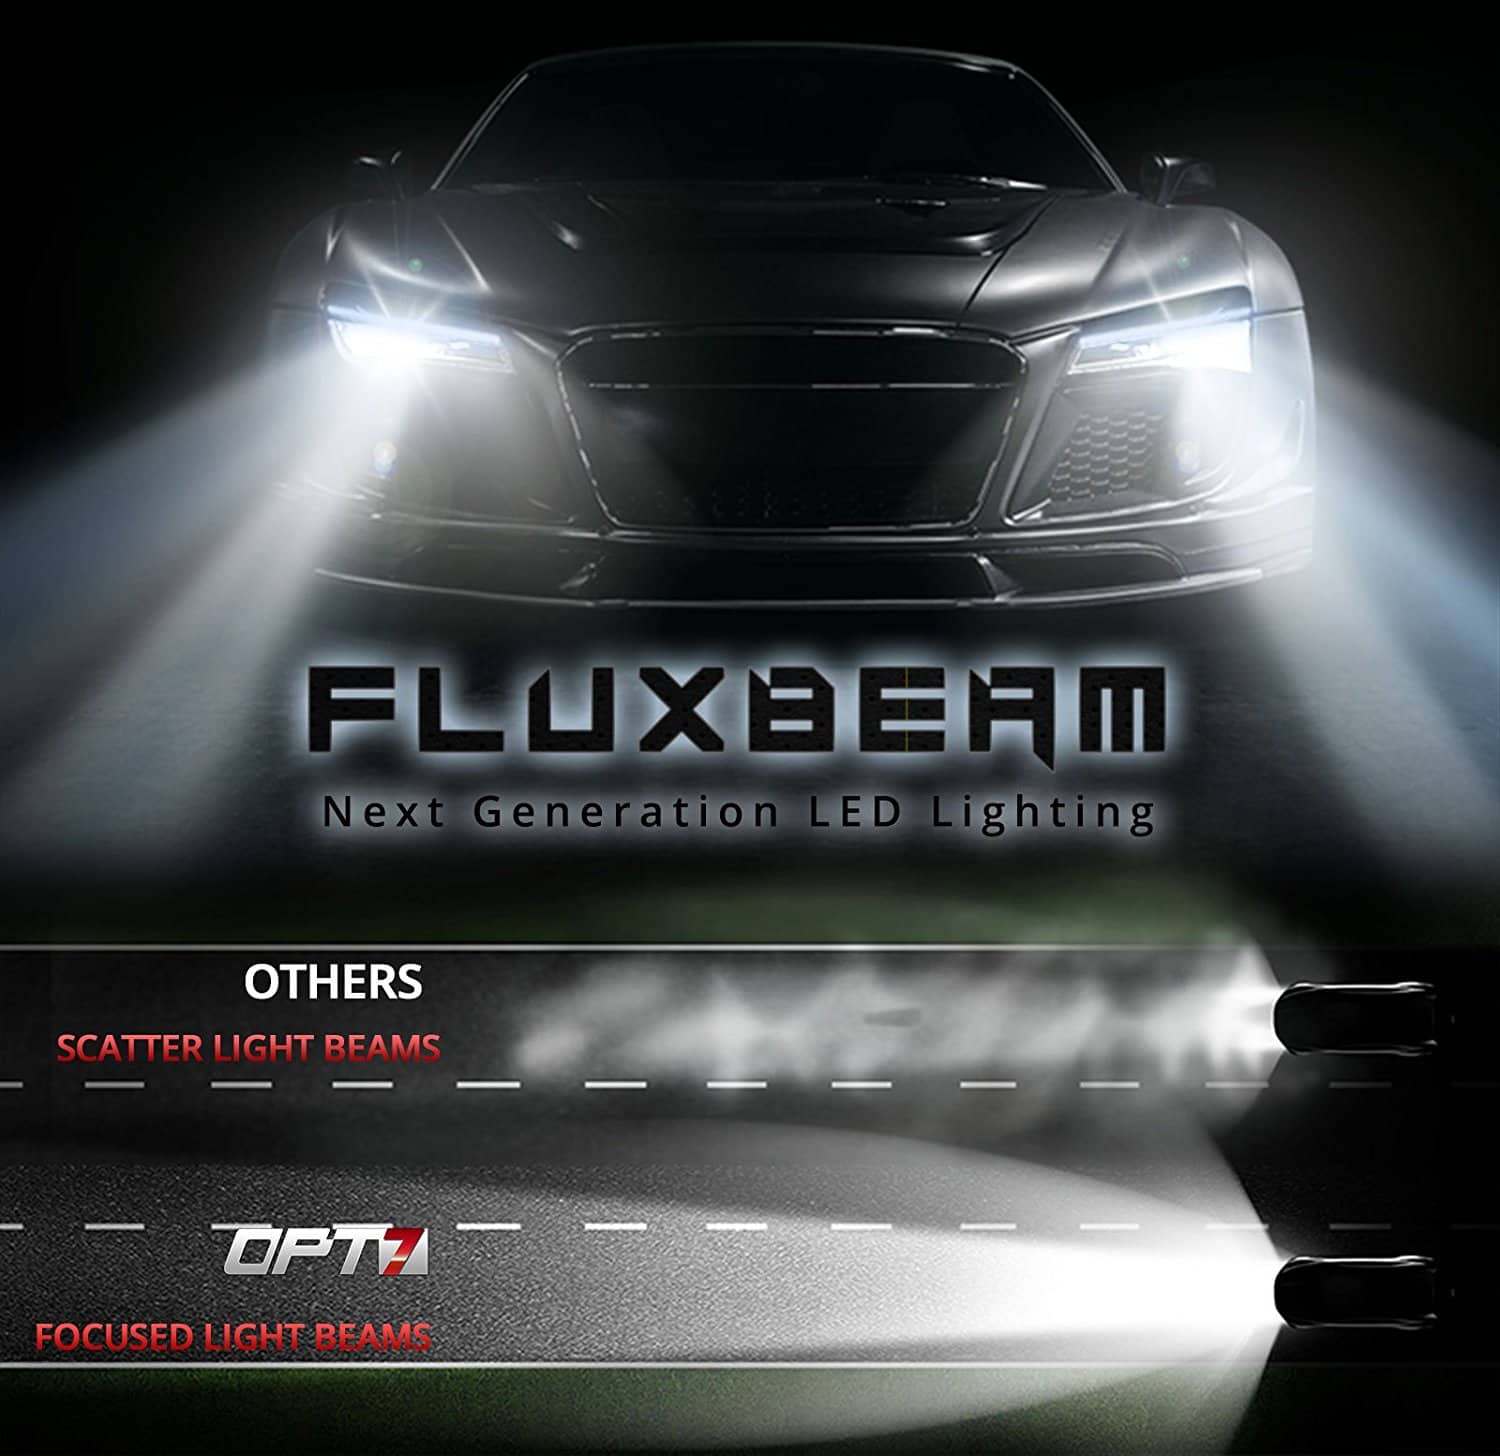 opt7 fluxbeam led headlight